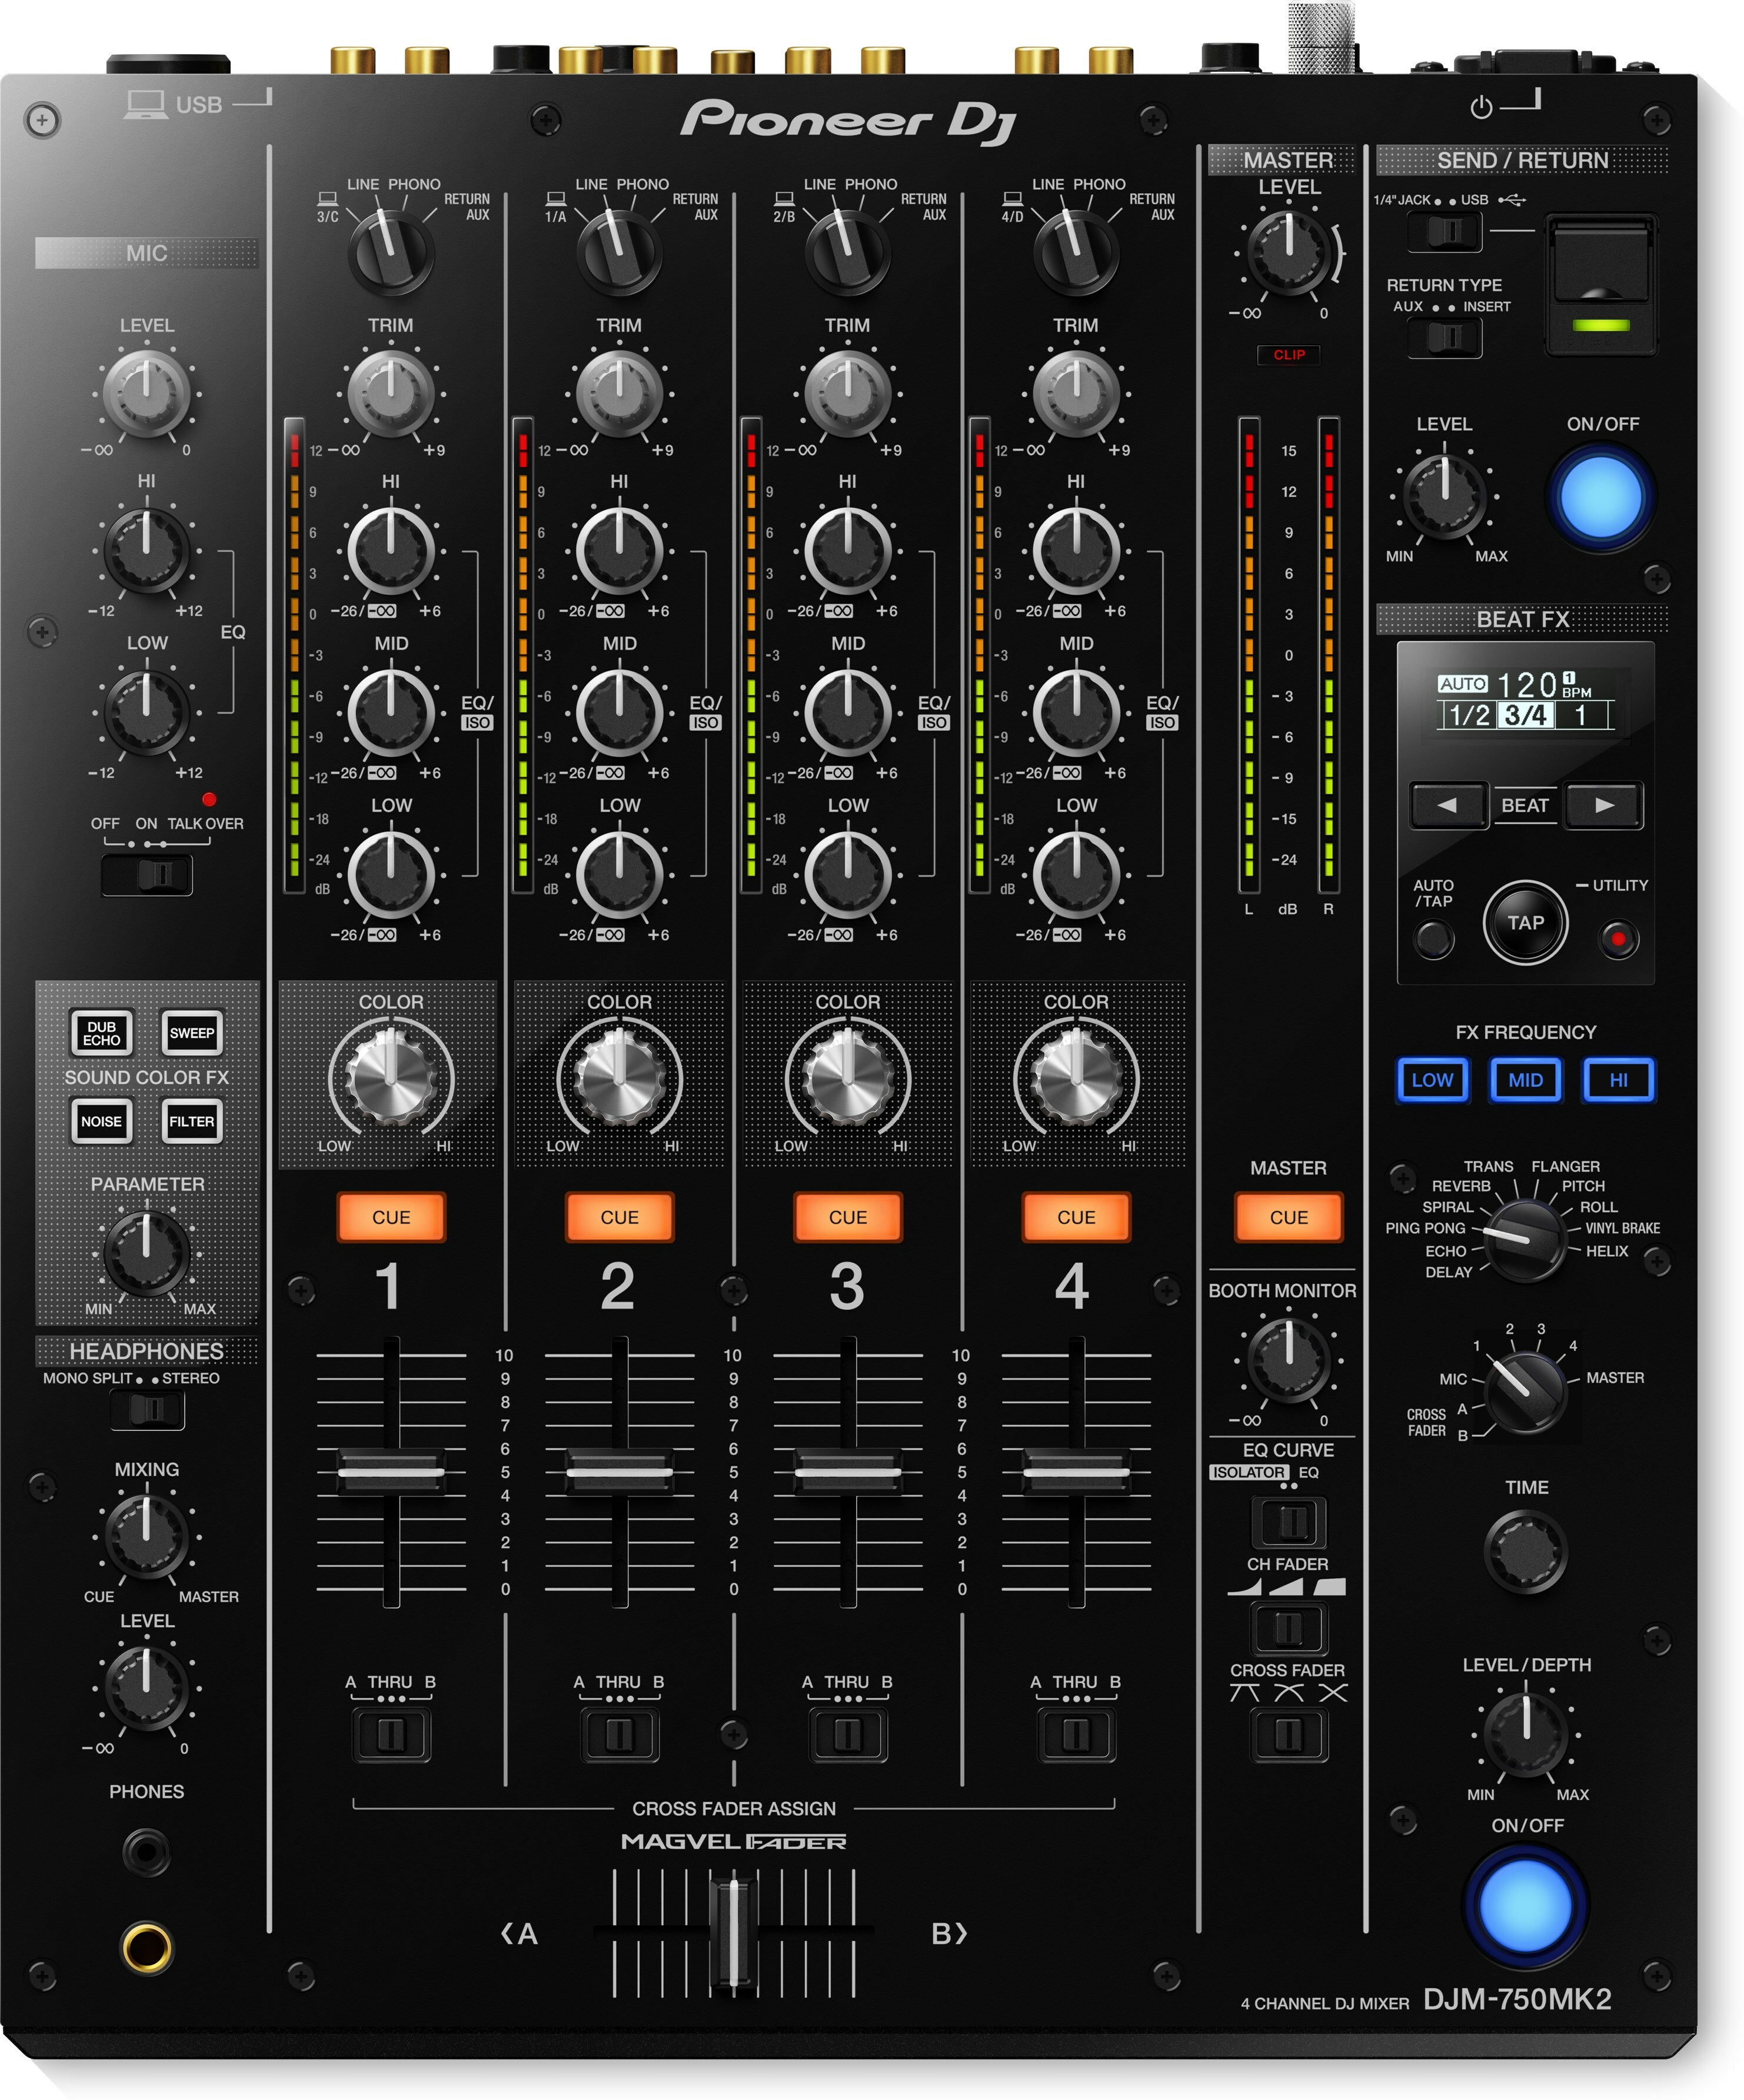 Pioneer Dj Djm-750mk2 - DJ mixer - Main picture